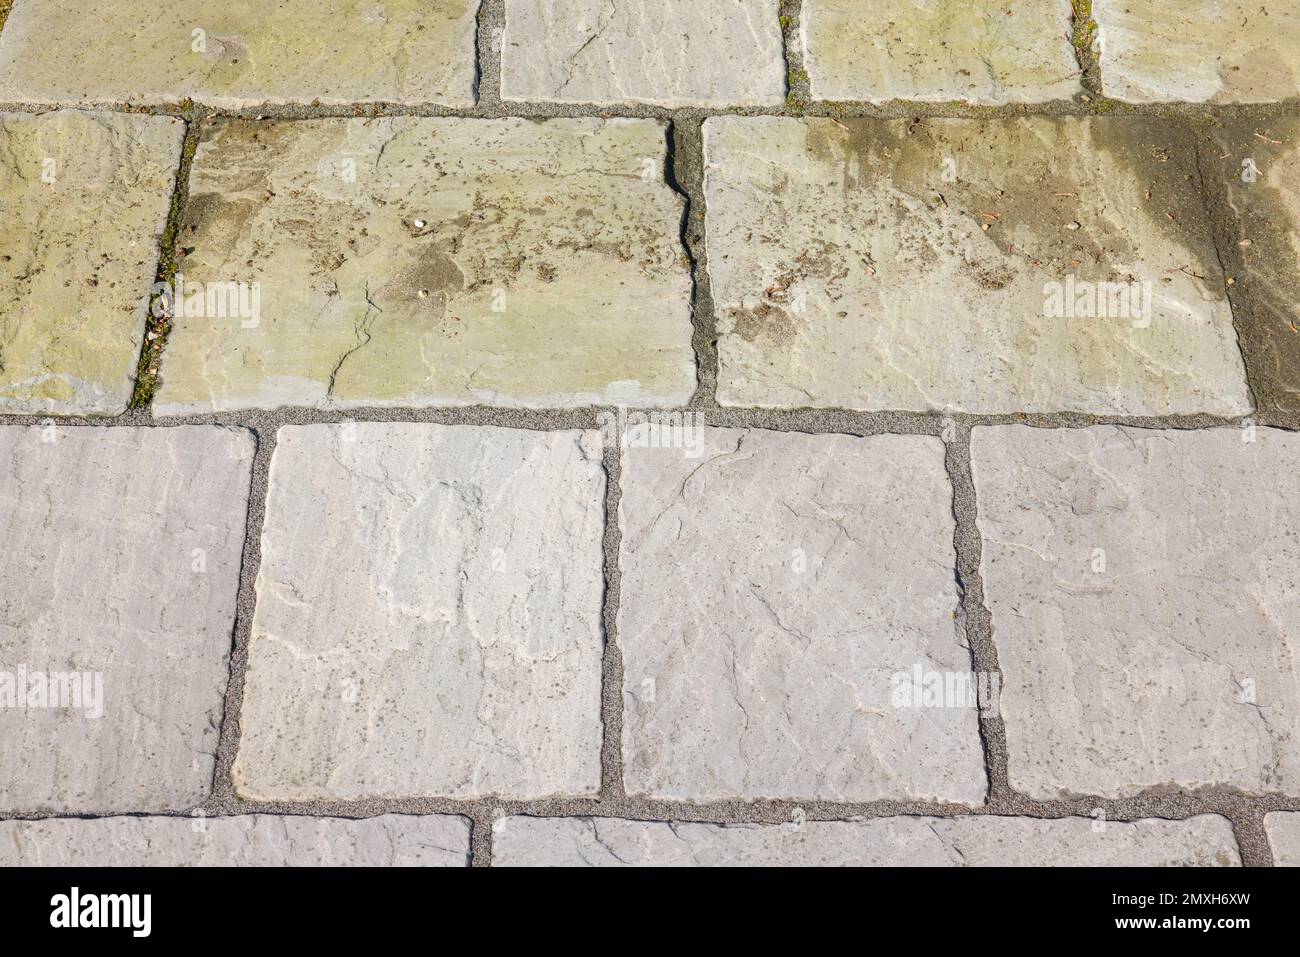 Reinigung der Gartenterrasse. Sandsteinpflaster vor und nach dem Waschen mit dem Hochdruckreiniger, UK. Stockfoto